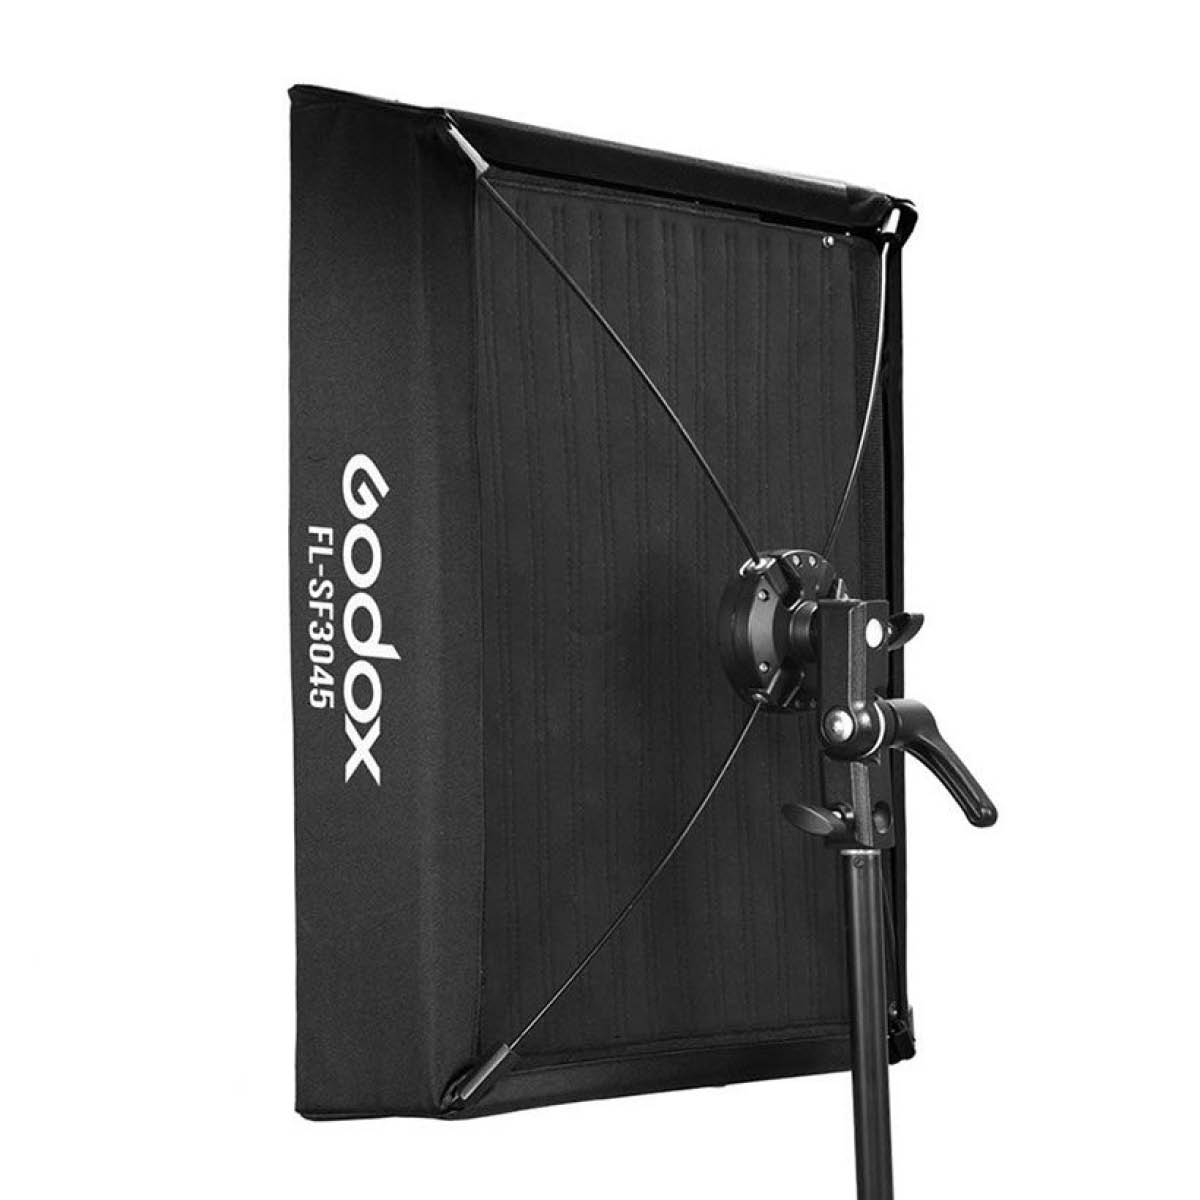 Godox Softbox und Grid für Soft LED Leucht FL 60